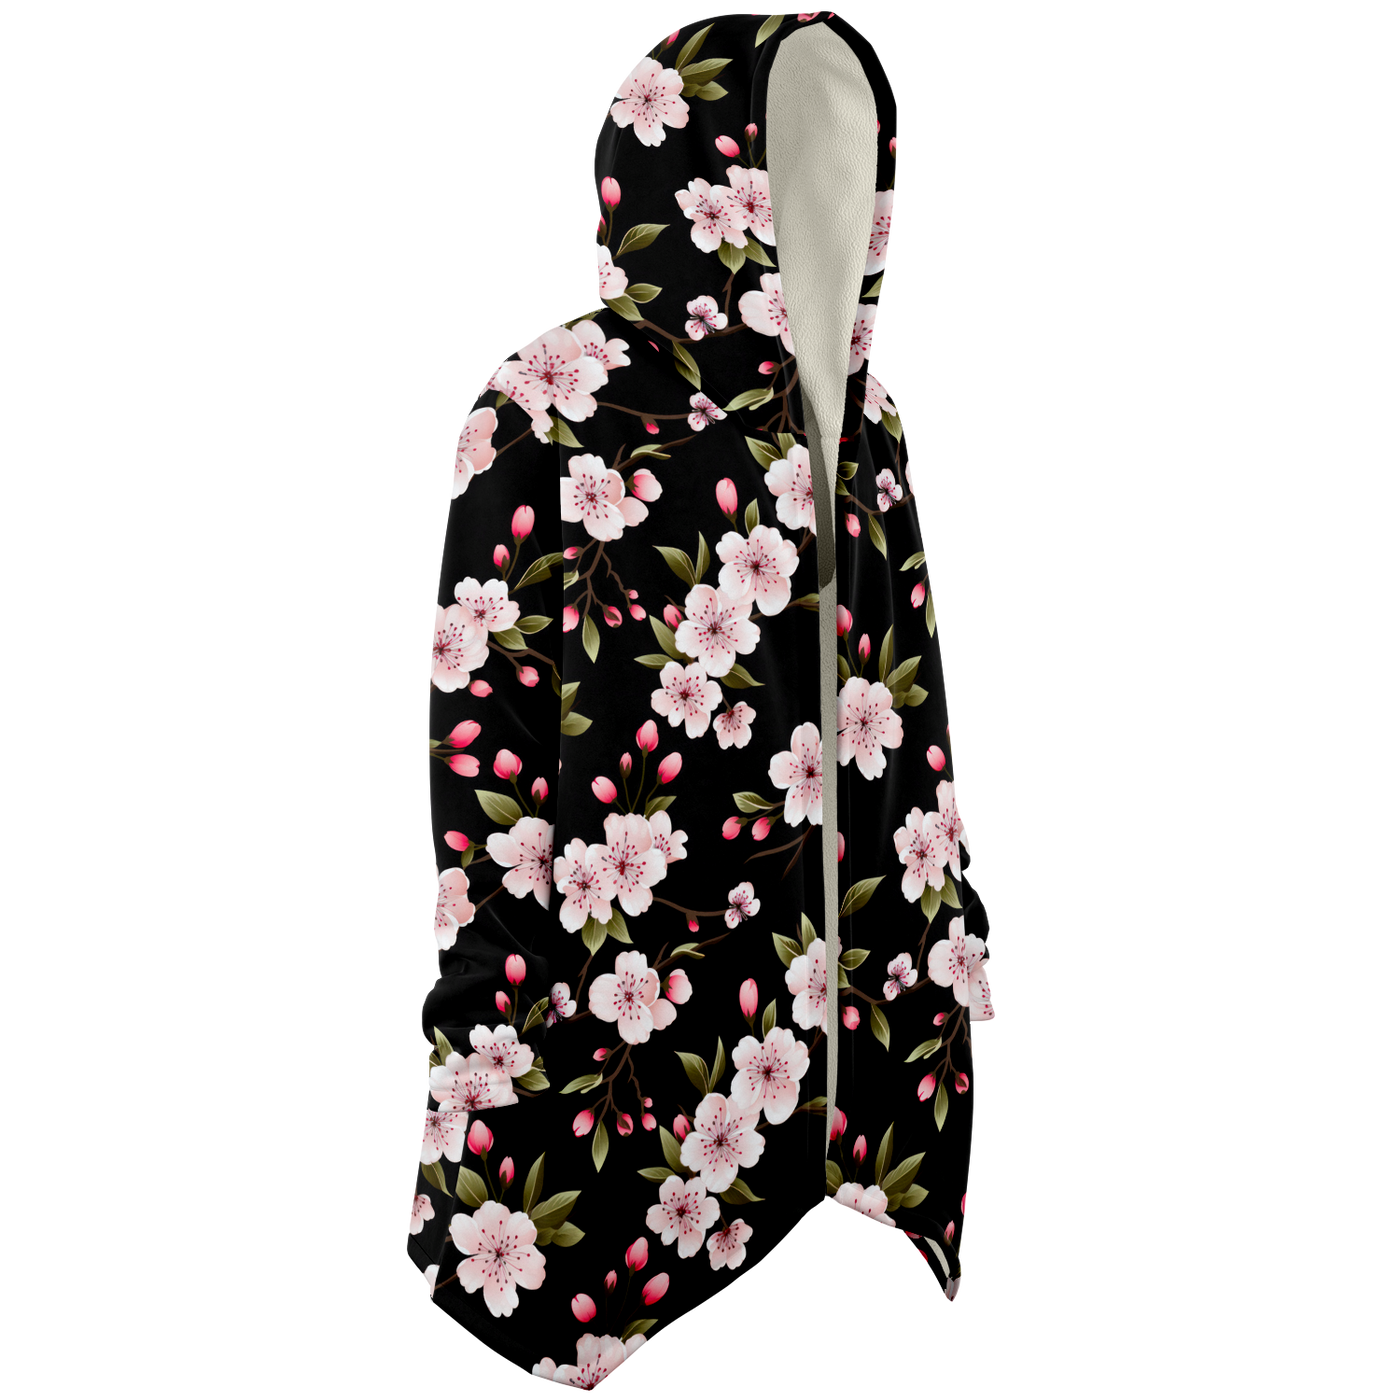 Capa de Microforro Polar Sakura (flor de cerezo) Midnight